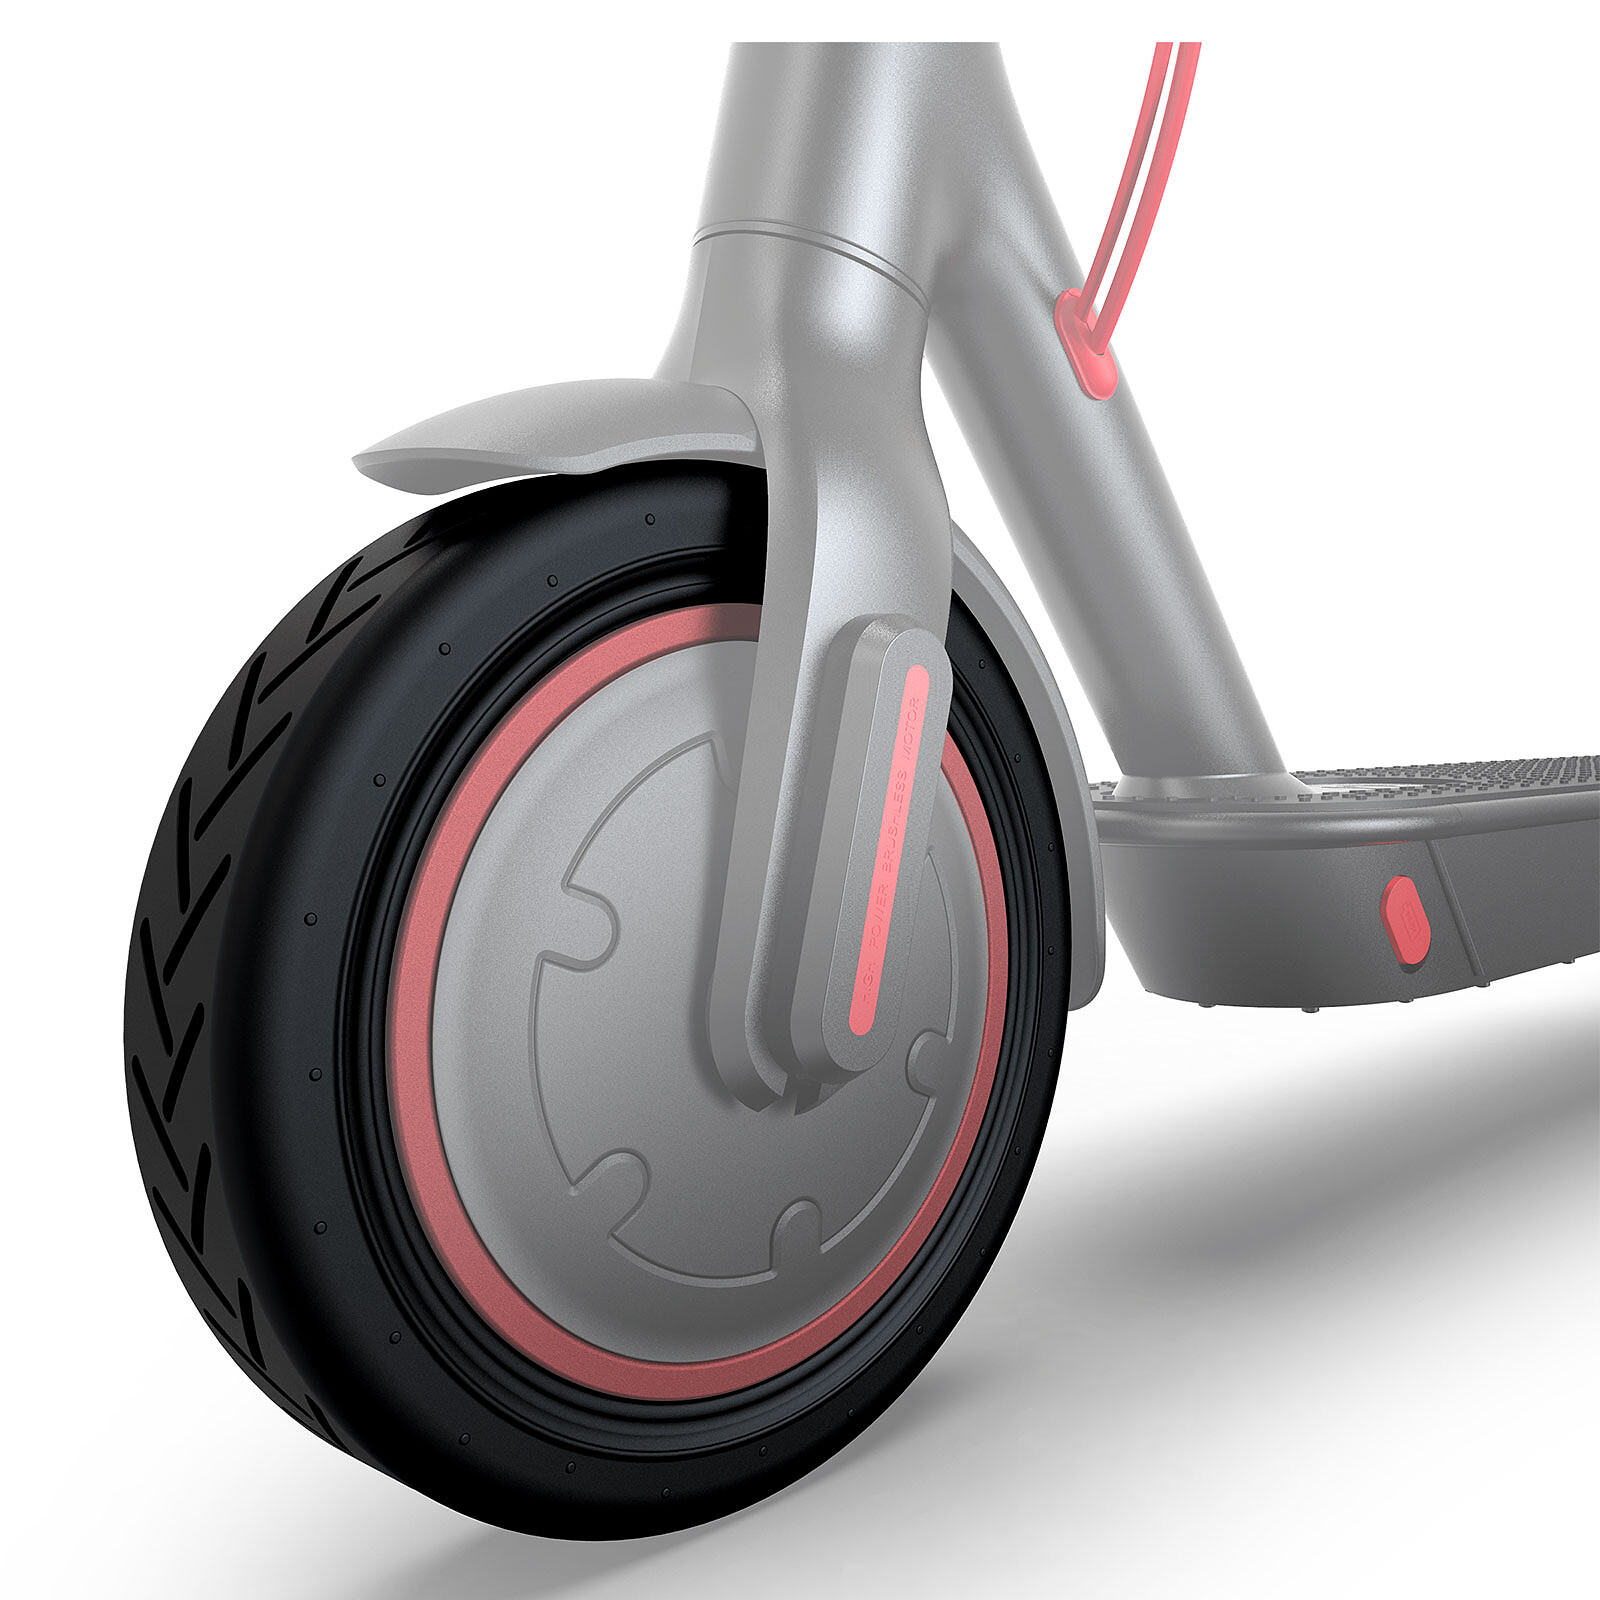 Tx - Support vélo pour smartphone avec chargeur QI et lampe - Accessoires  mobilité urbaine - LDLC